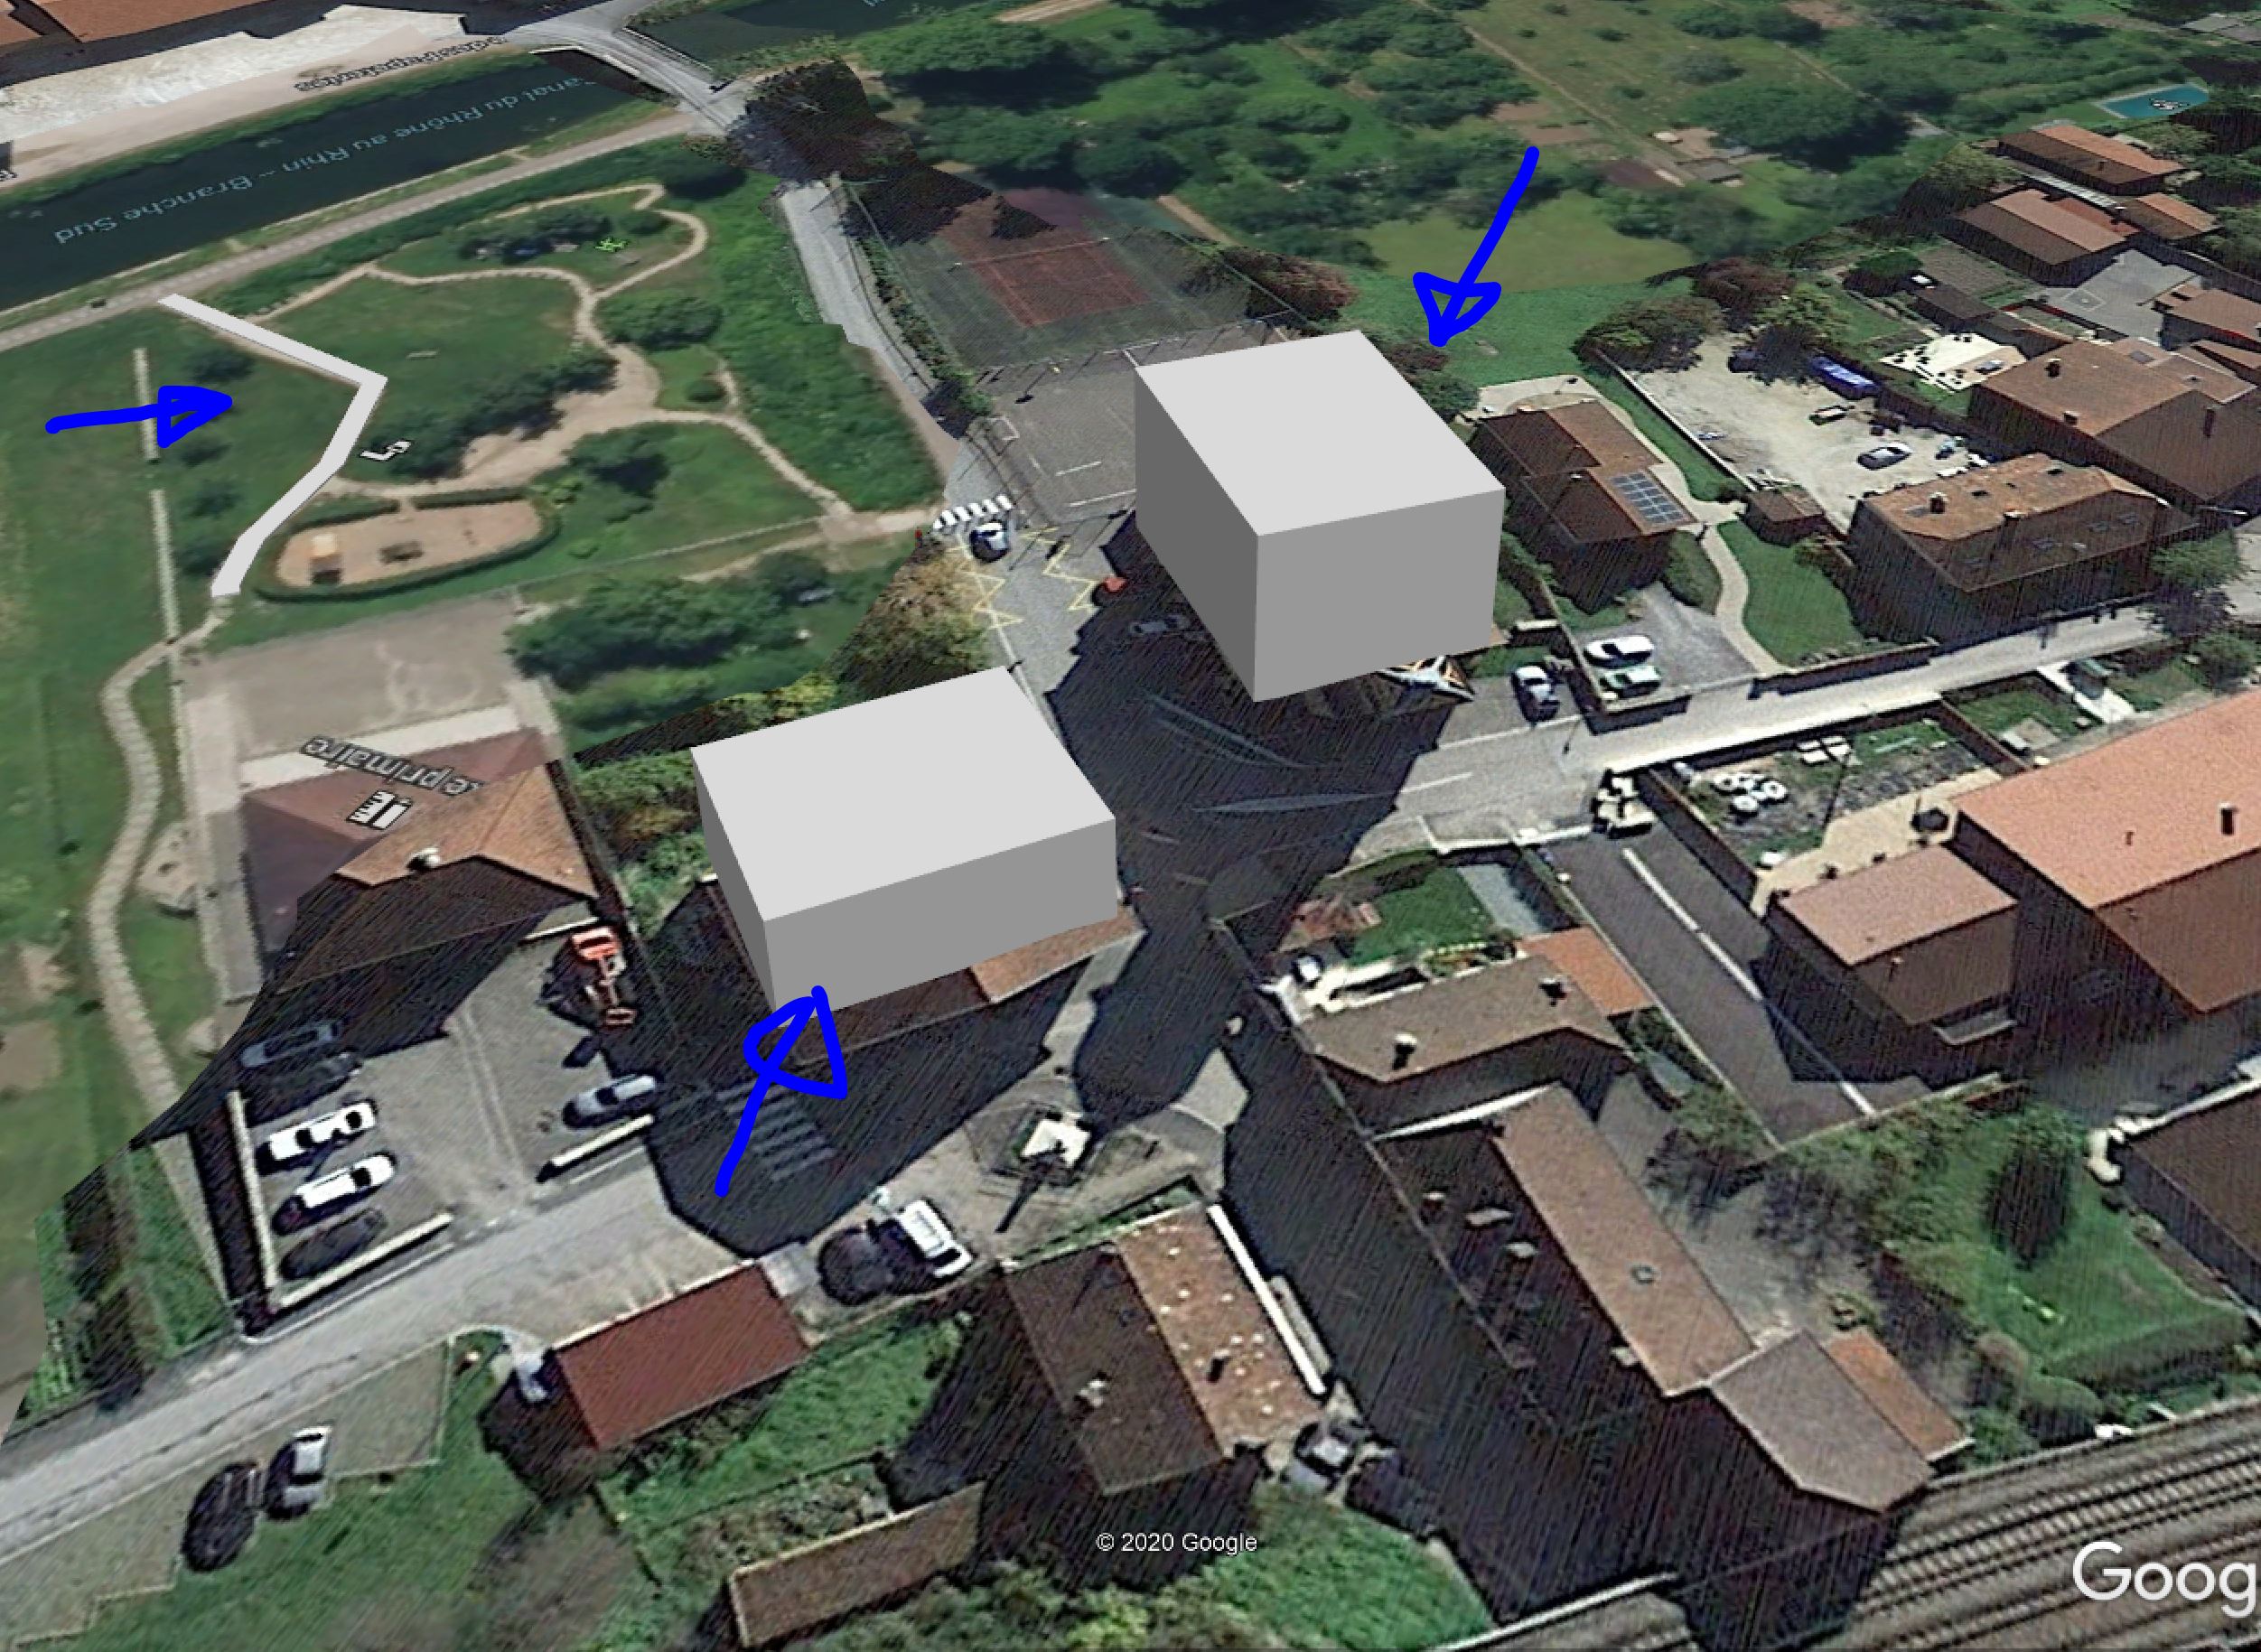  [ SKETCHUP généralité ] Mettre un modèle sur Google Earth Captu284